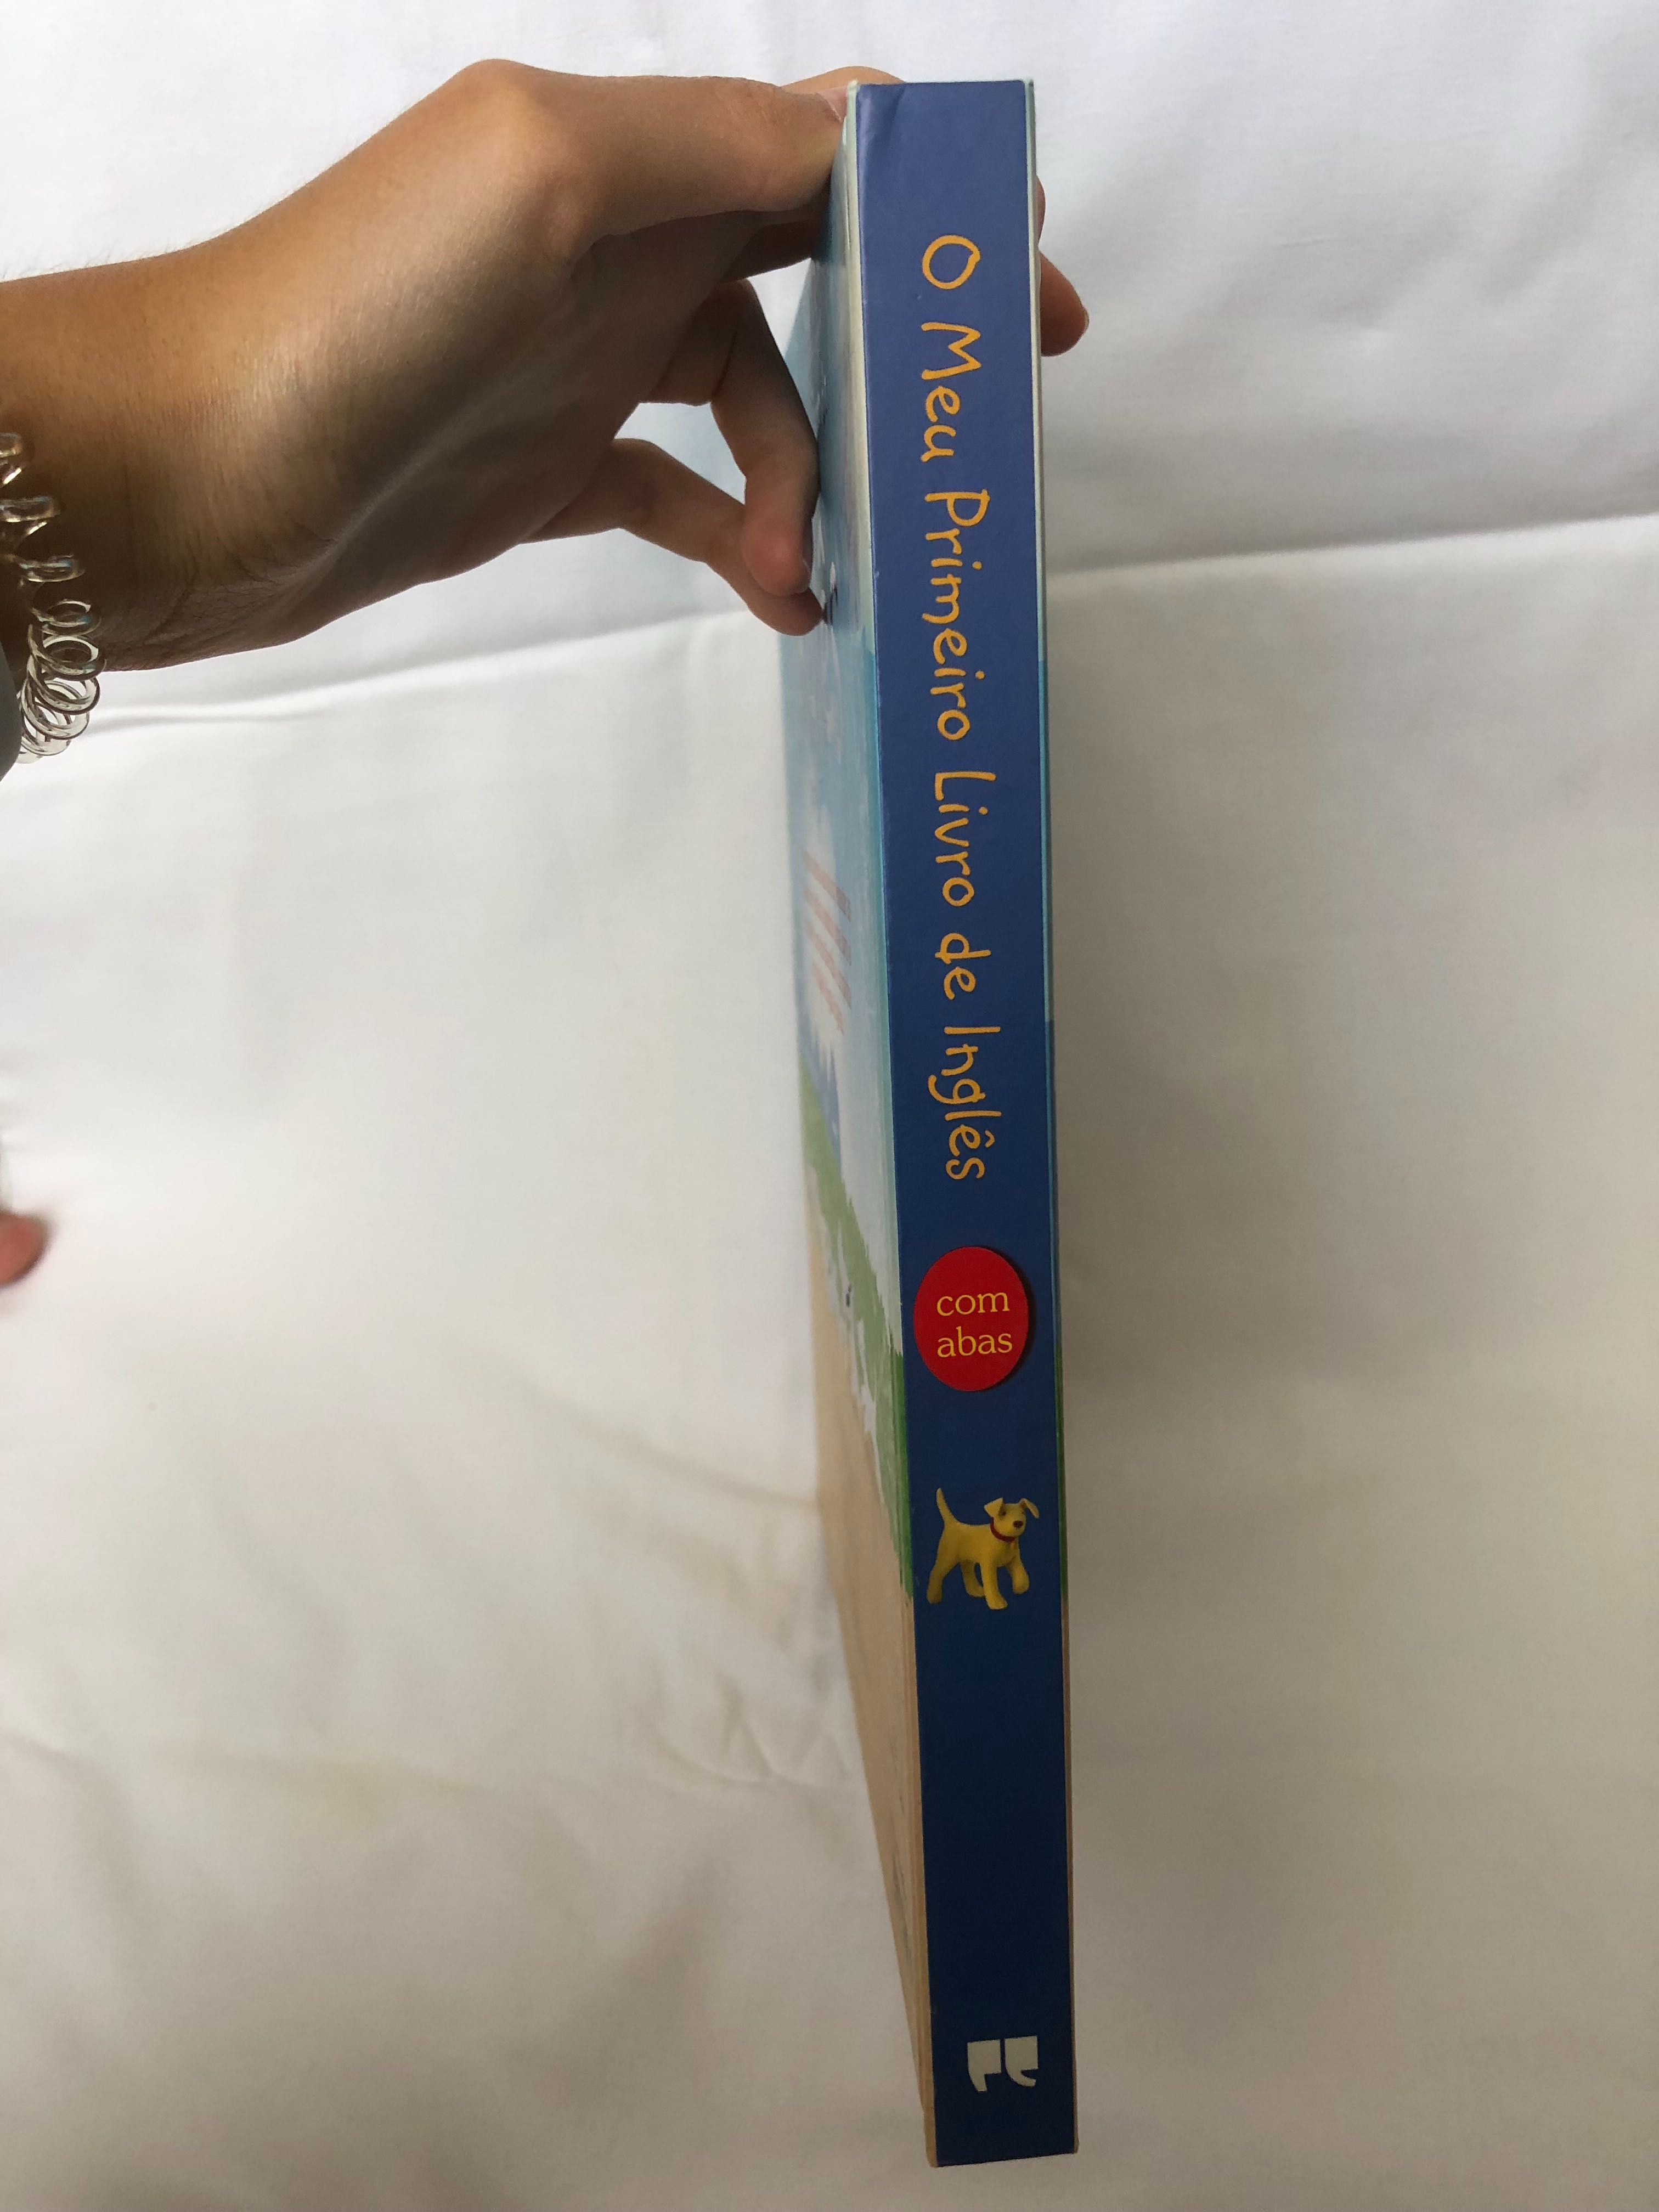 Livro da infantil para aprender inglês, com abas